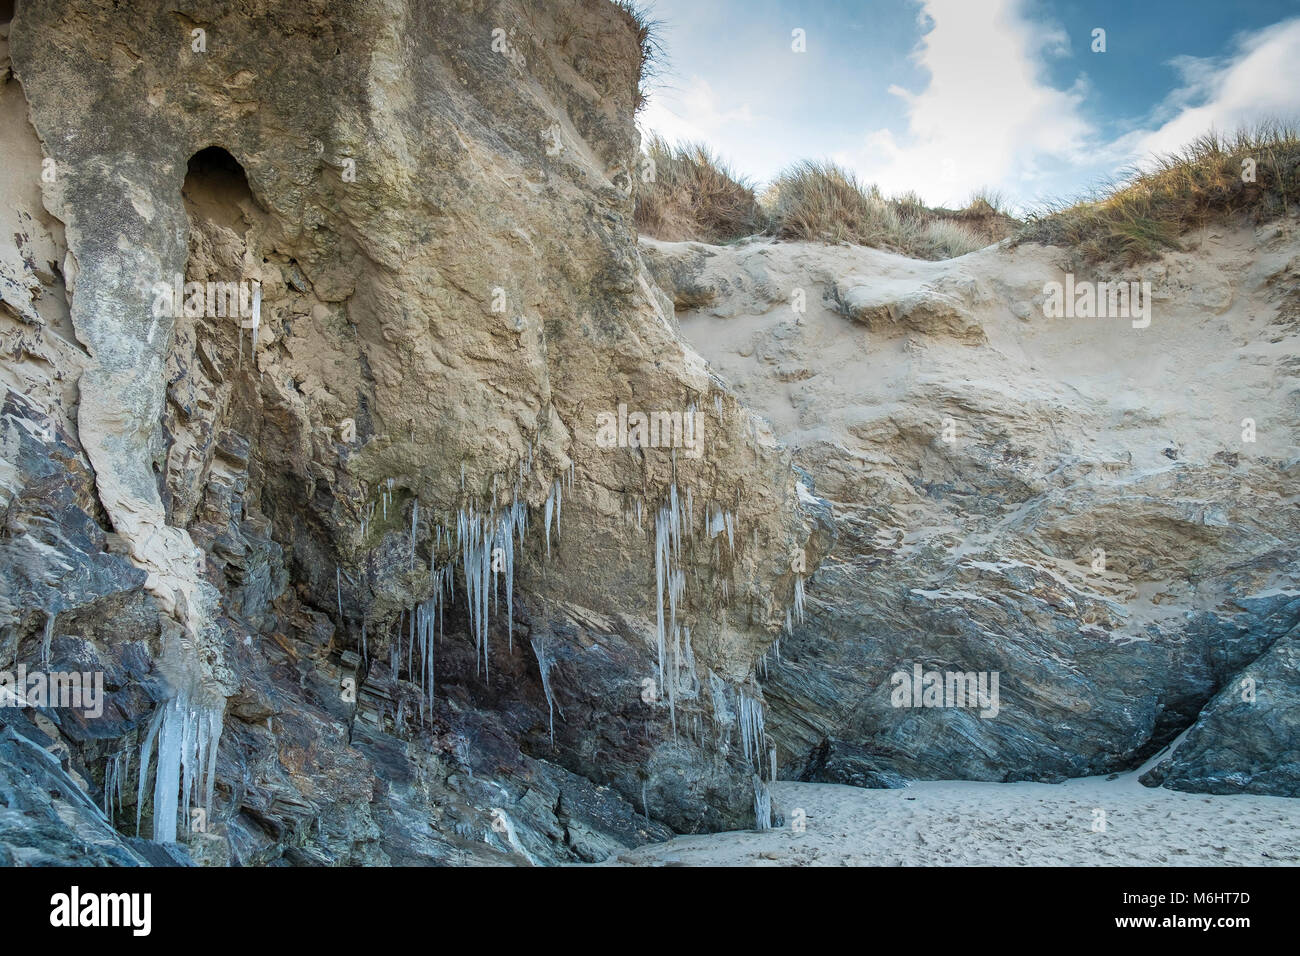 El clima del Reino Unido carámbanos formados por el agua de la capa freática filtrándose a través de las dunas de arena en la playa Crantock en Newquay, Cornwall. Foto de stock